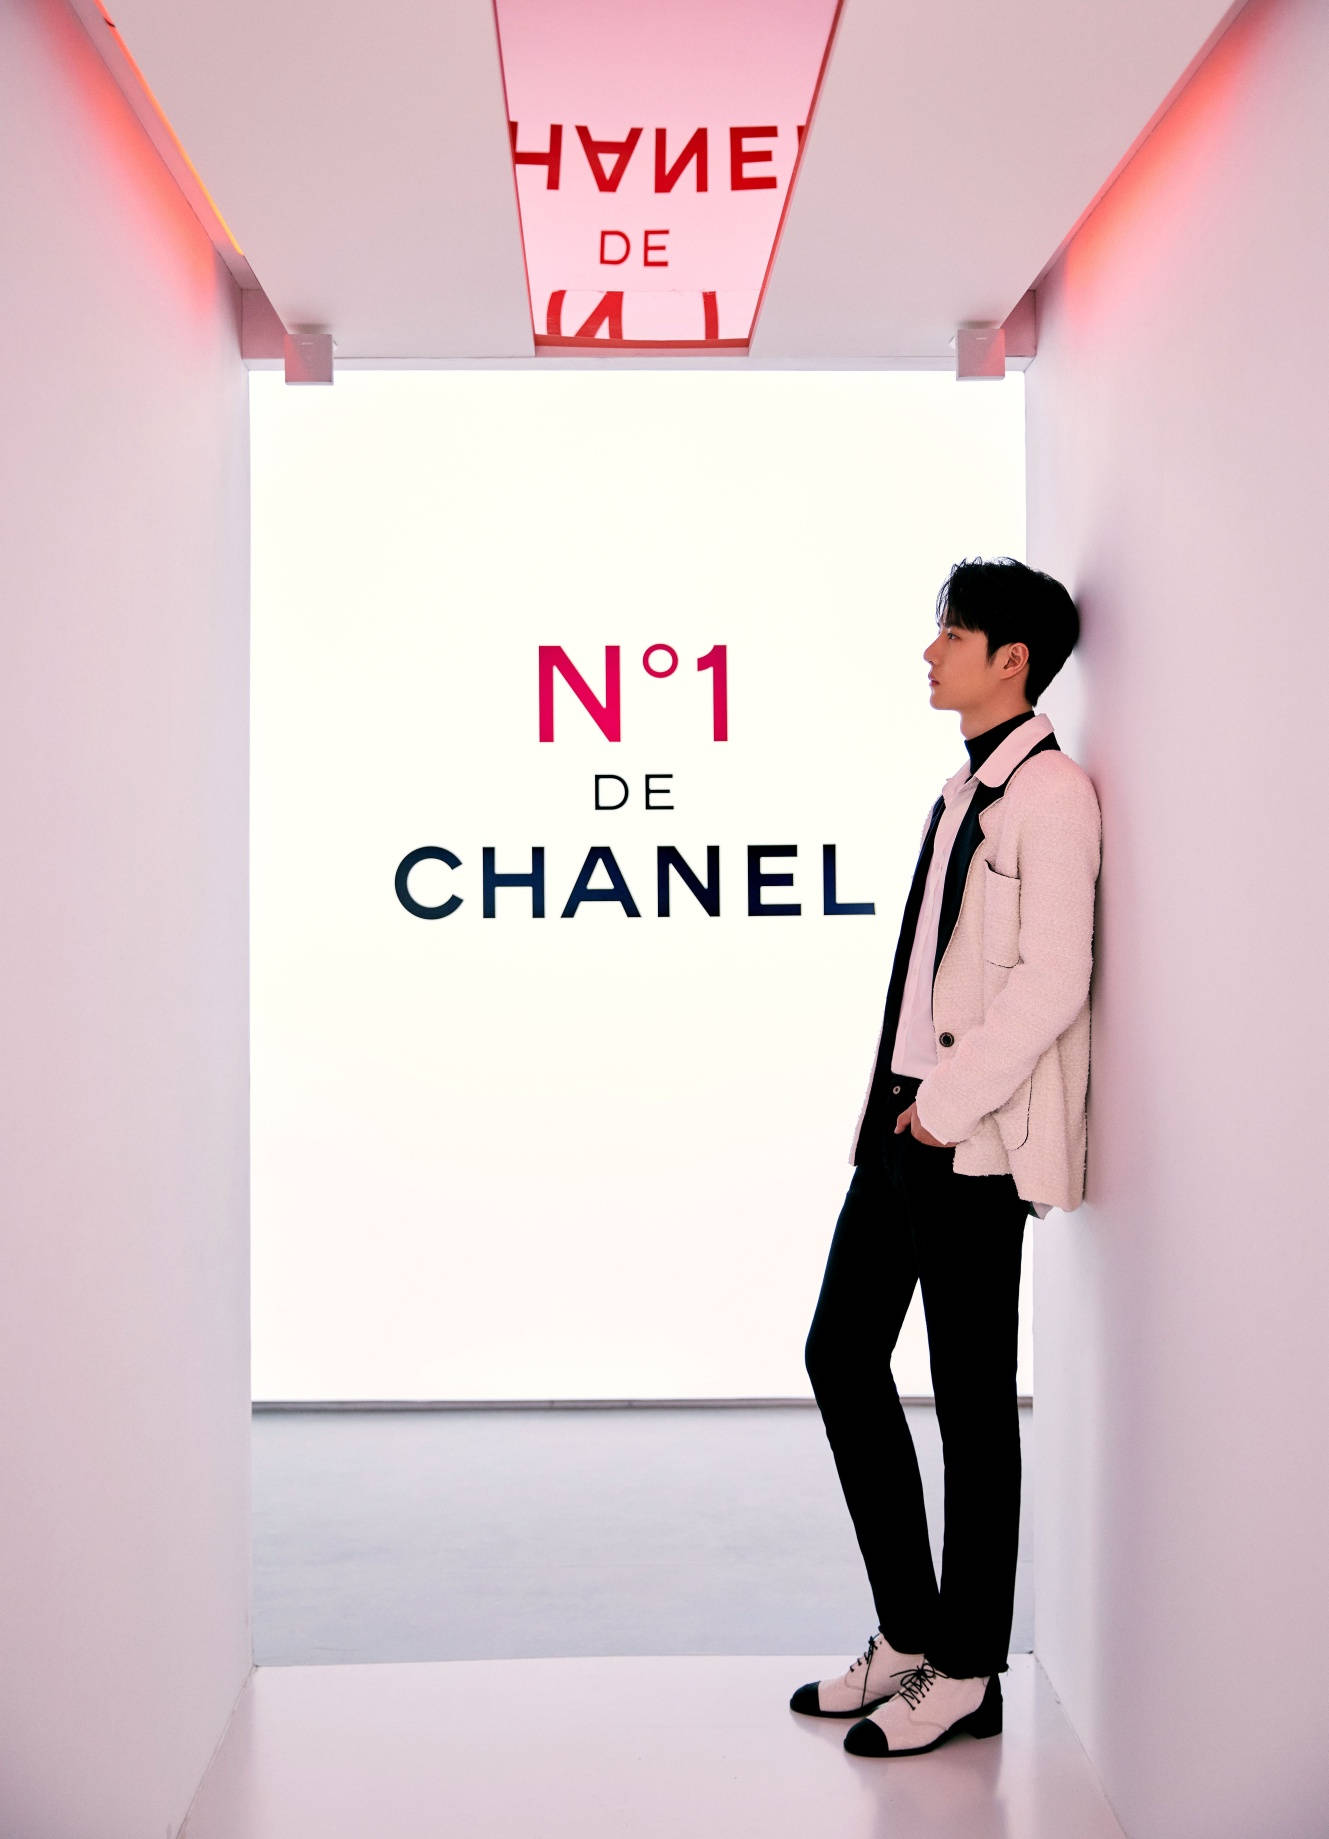 Wang Yibo X Chanel kombineret stil med indbyggede vandløb. Wallpaper